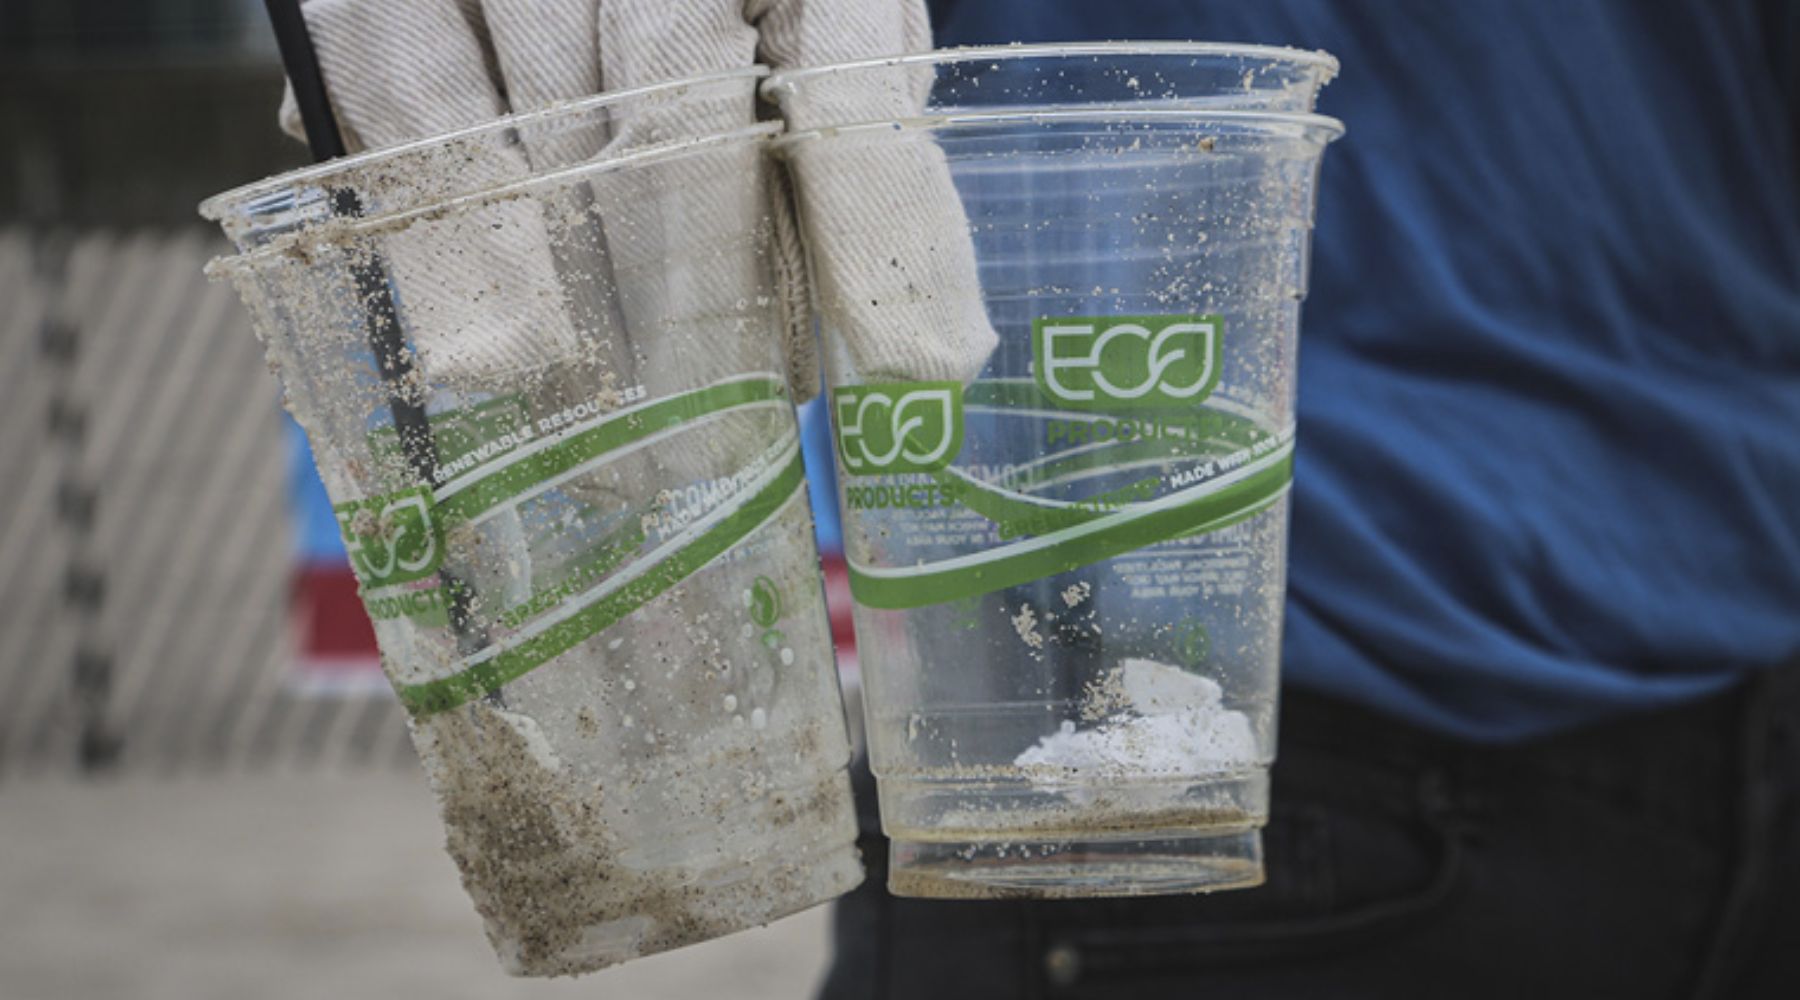 Prática de Greenwashing com copos de plástico "eco"